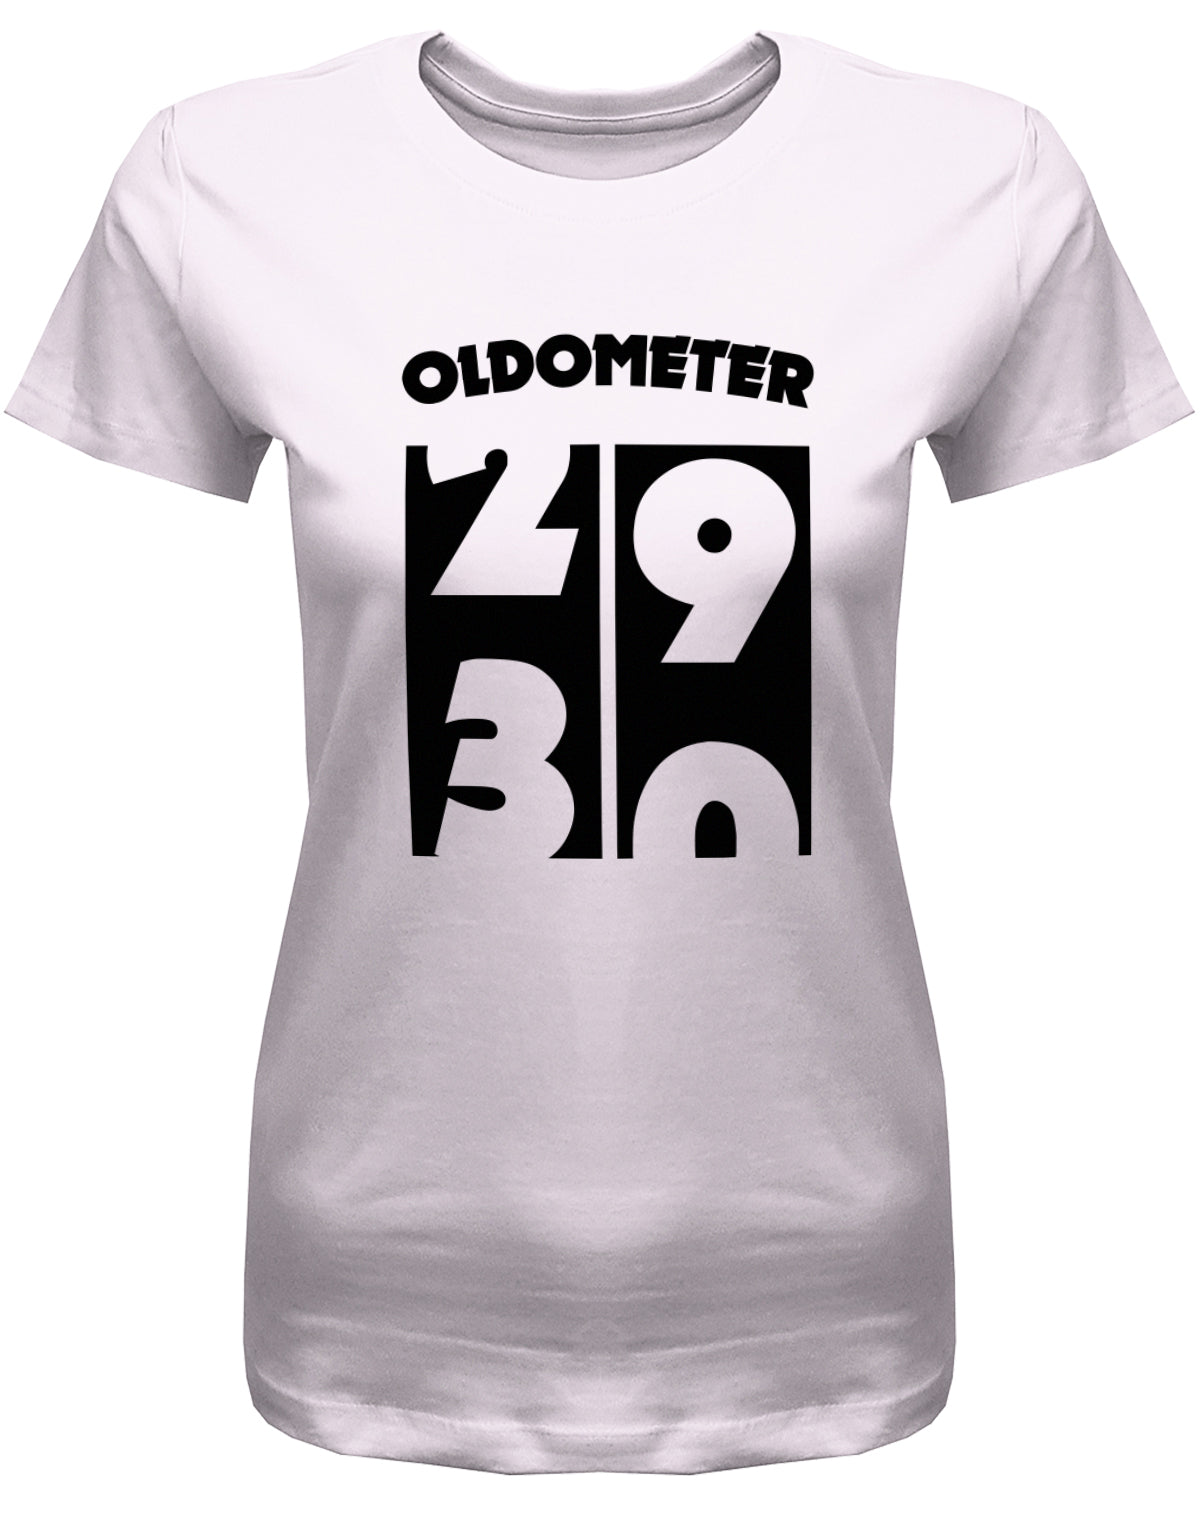 Lustiges T-Shirt zum 30. Geburtstag für die Frau Bedruckt mit Oldometer. Wechsel von 29 auf 30 Jahren. rosa